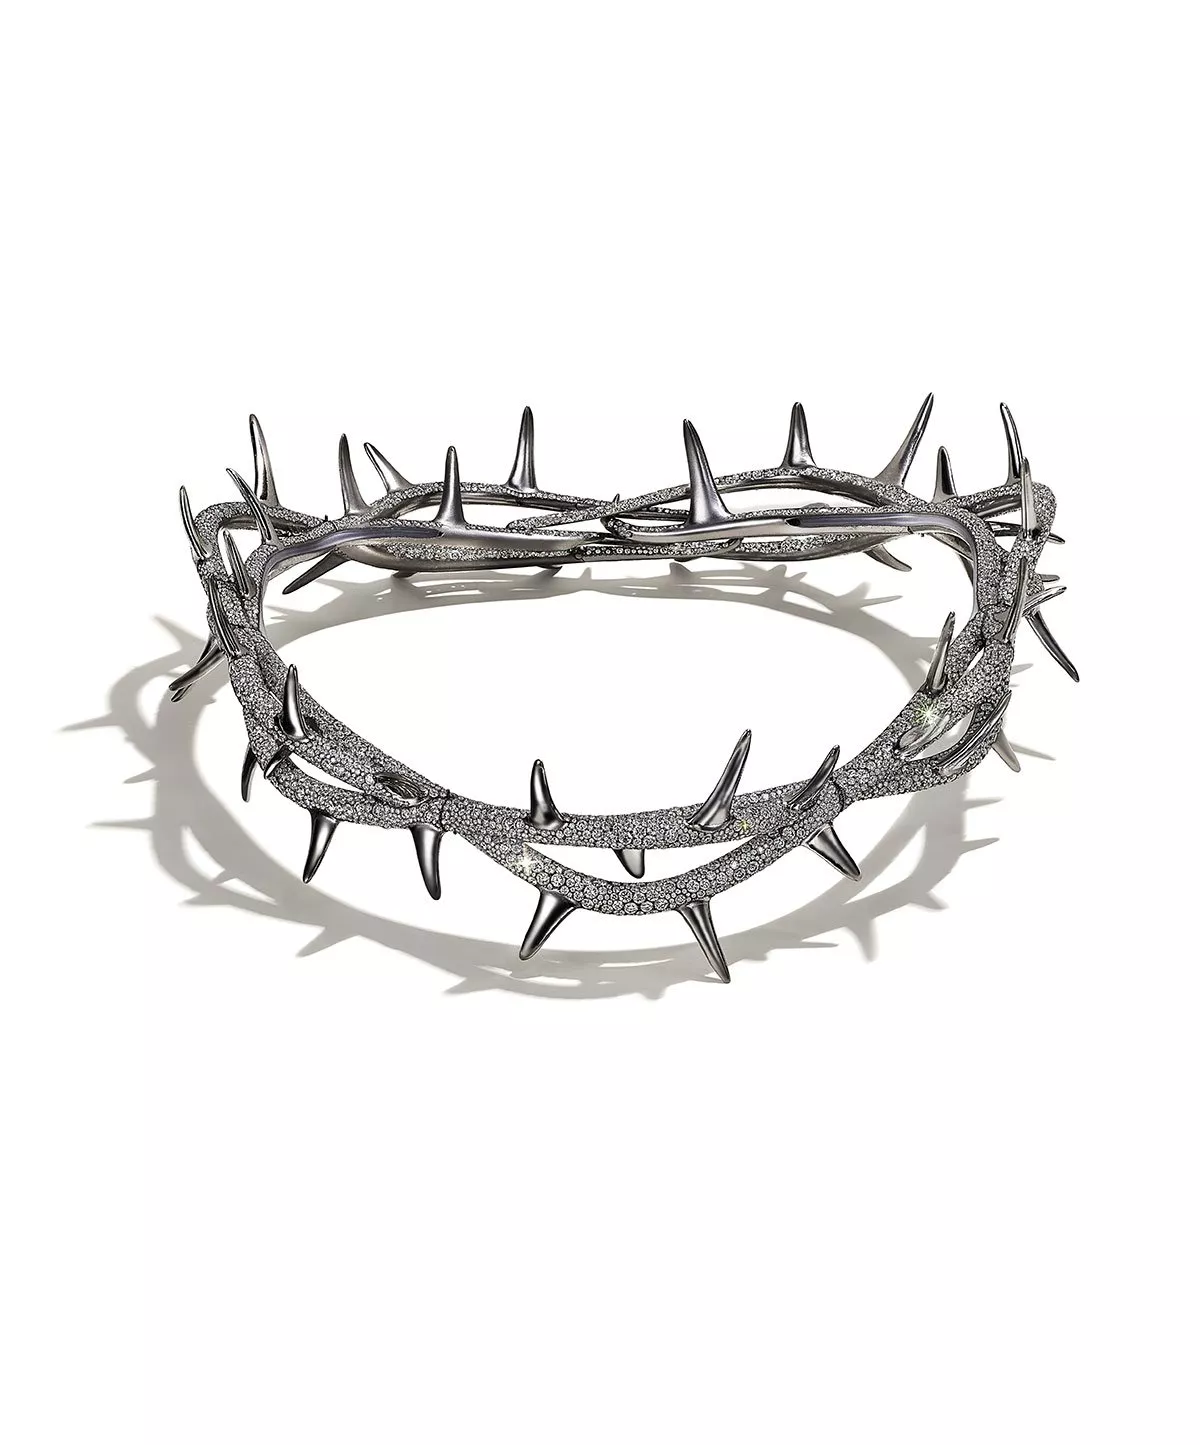 علامة Tiffany & Co تُطلق تصميم Crown of Thorns بالتعاون مع الفنان كيندريك لامار